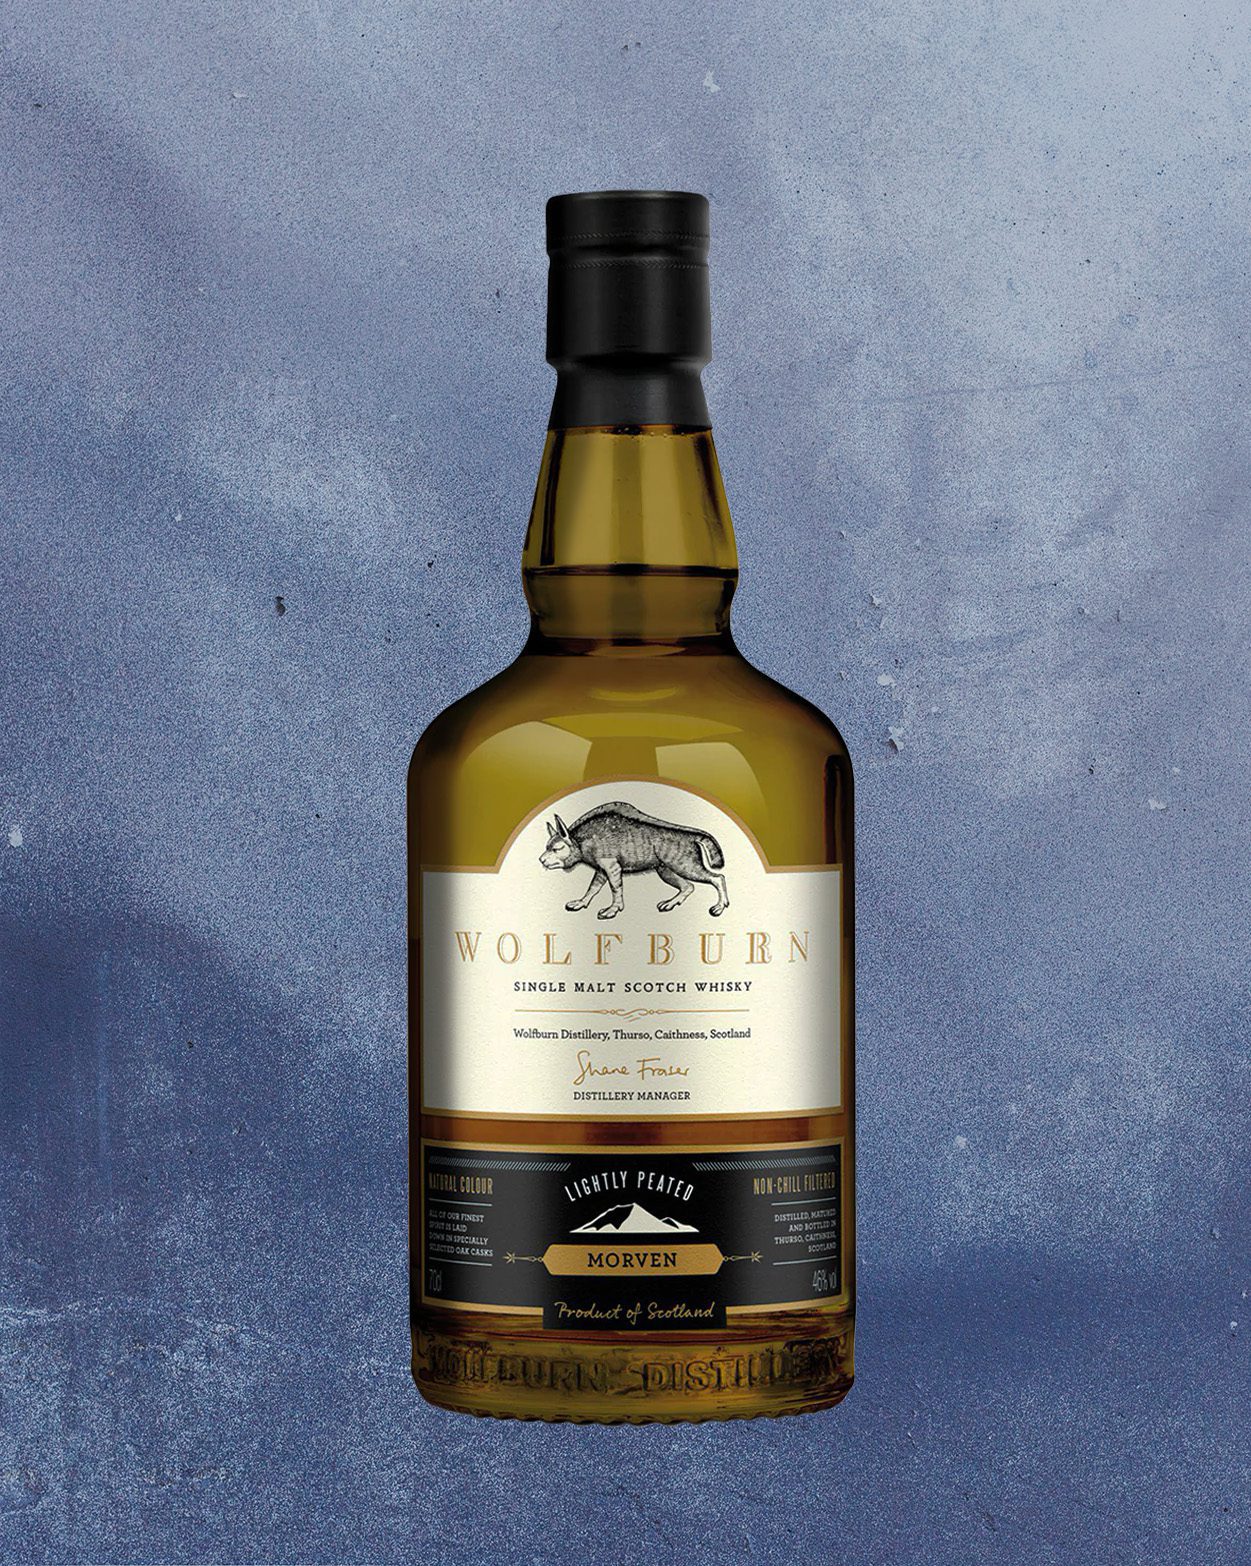 Pin on Scotch Whisky & WHISKY Brand